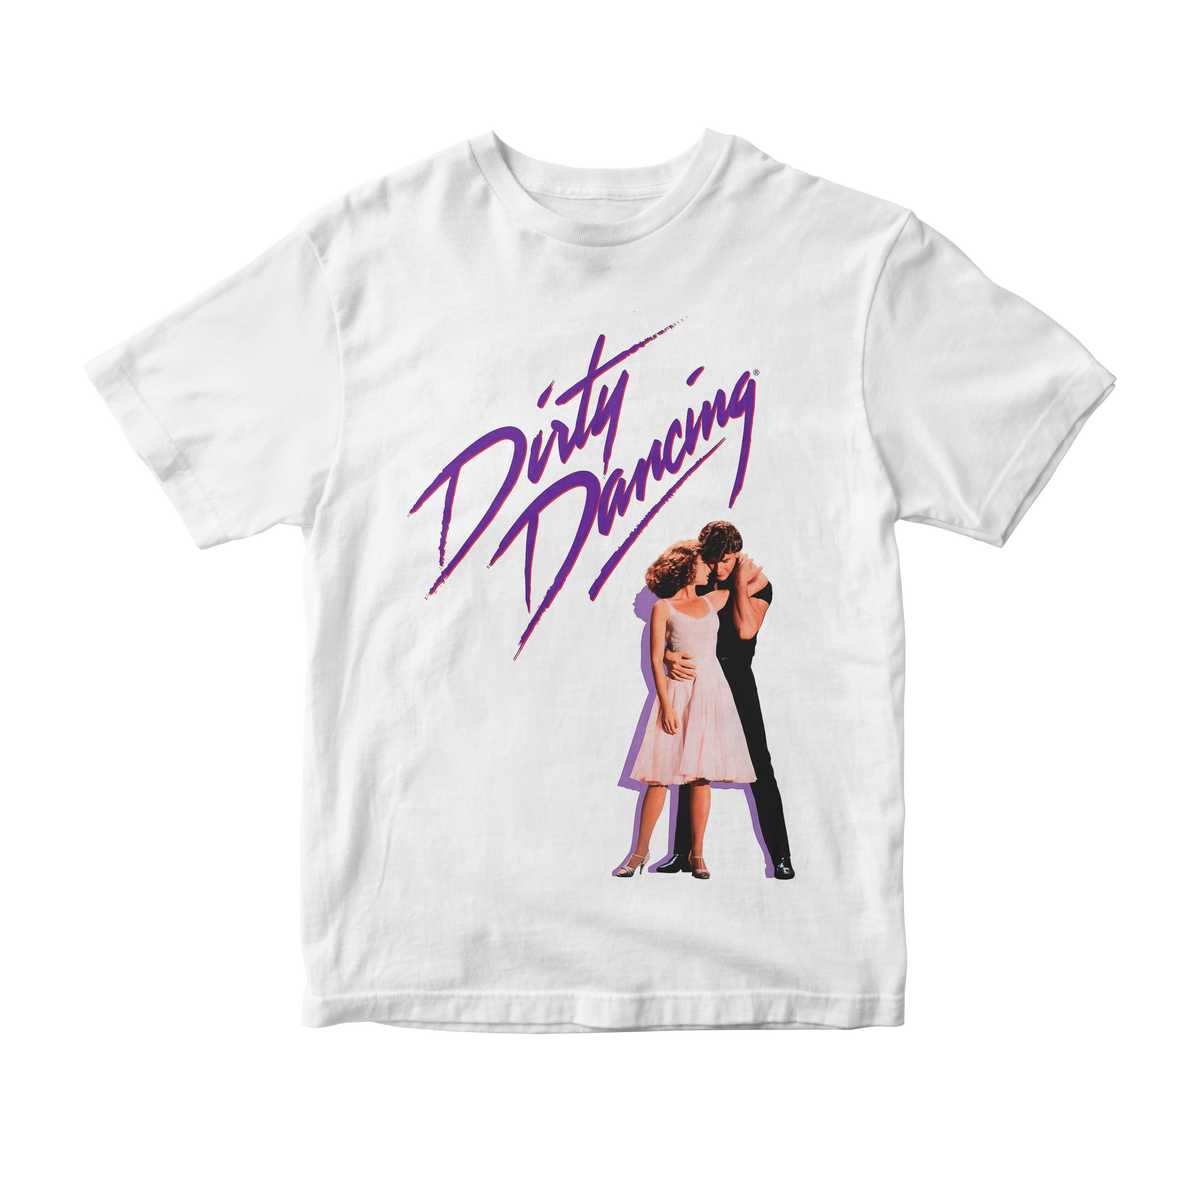 Nome do produto: Camiseta Dirty Dancing v1